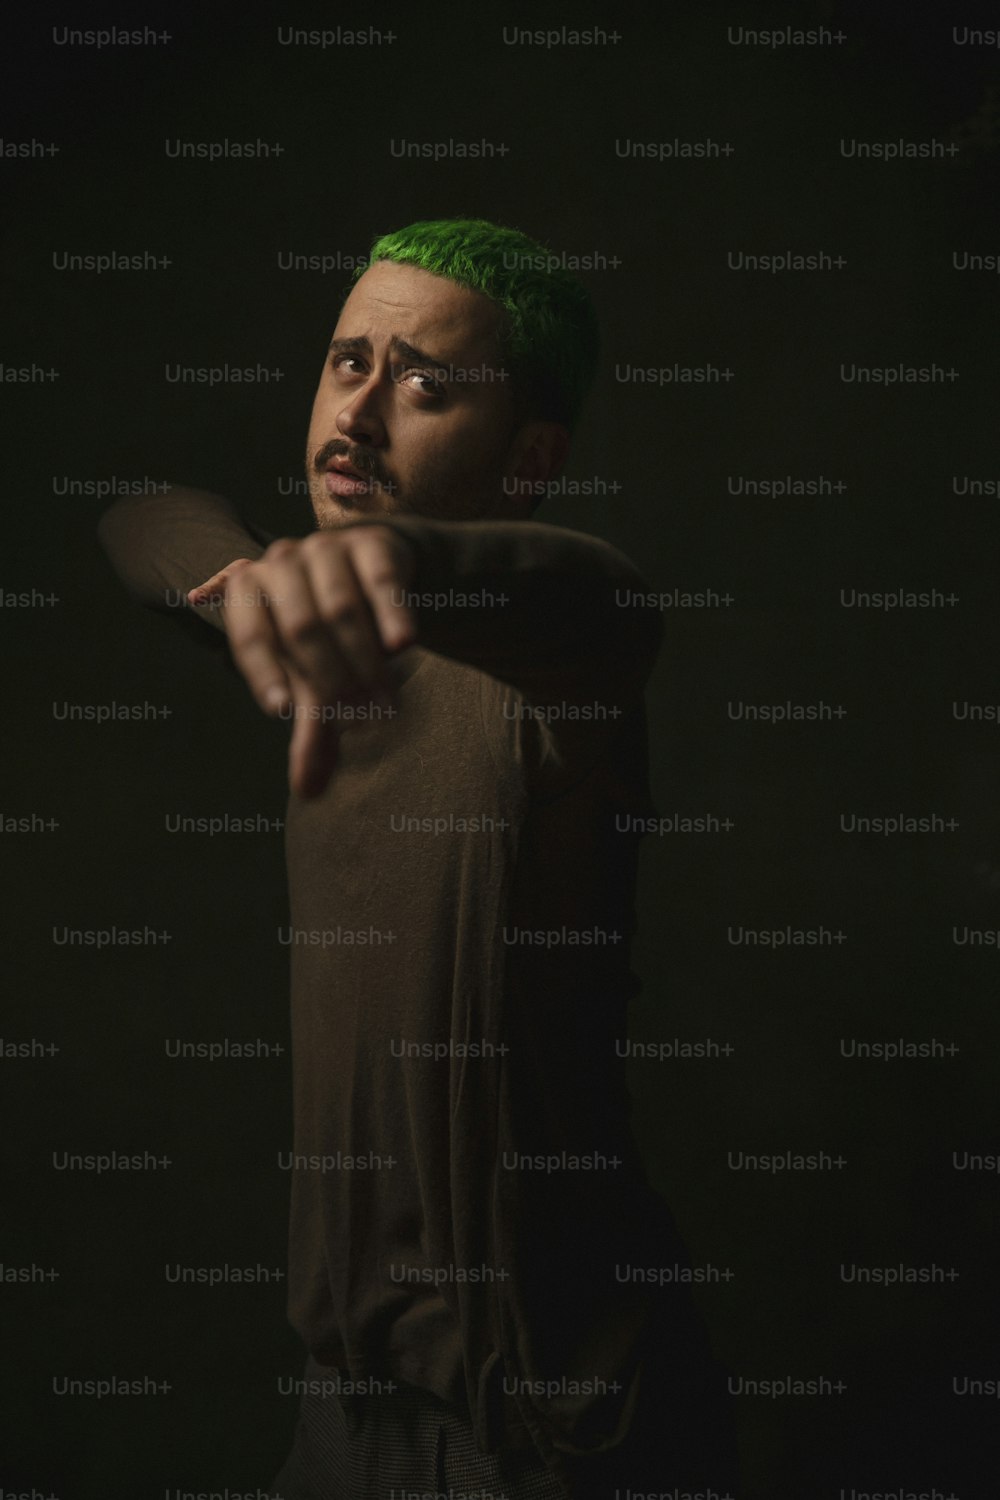 a man with green hair pointing a gun